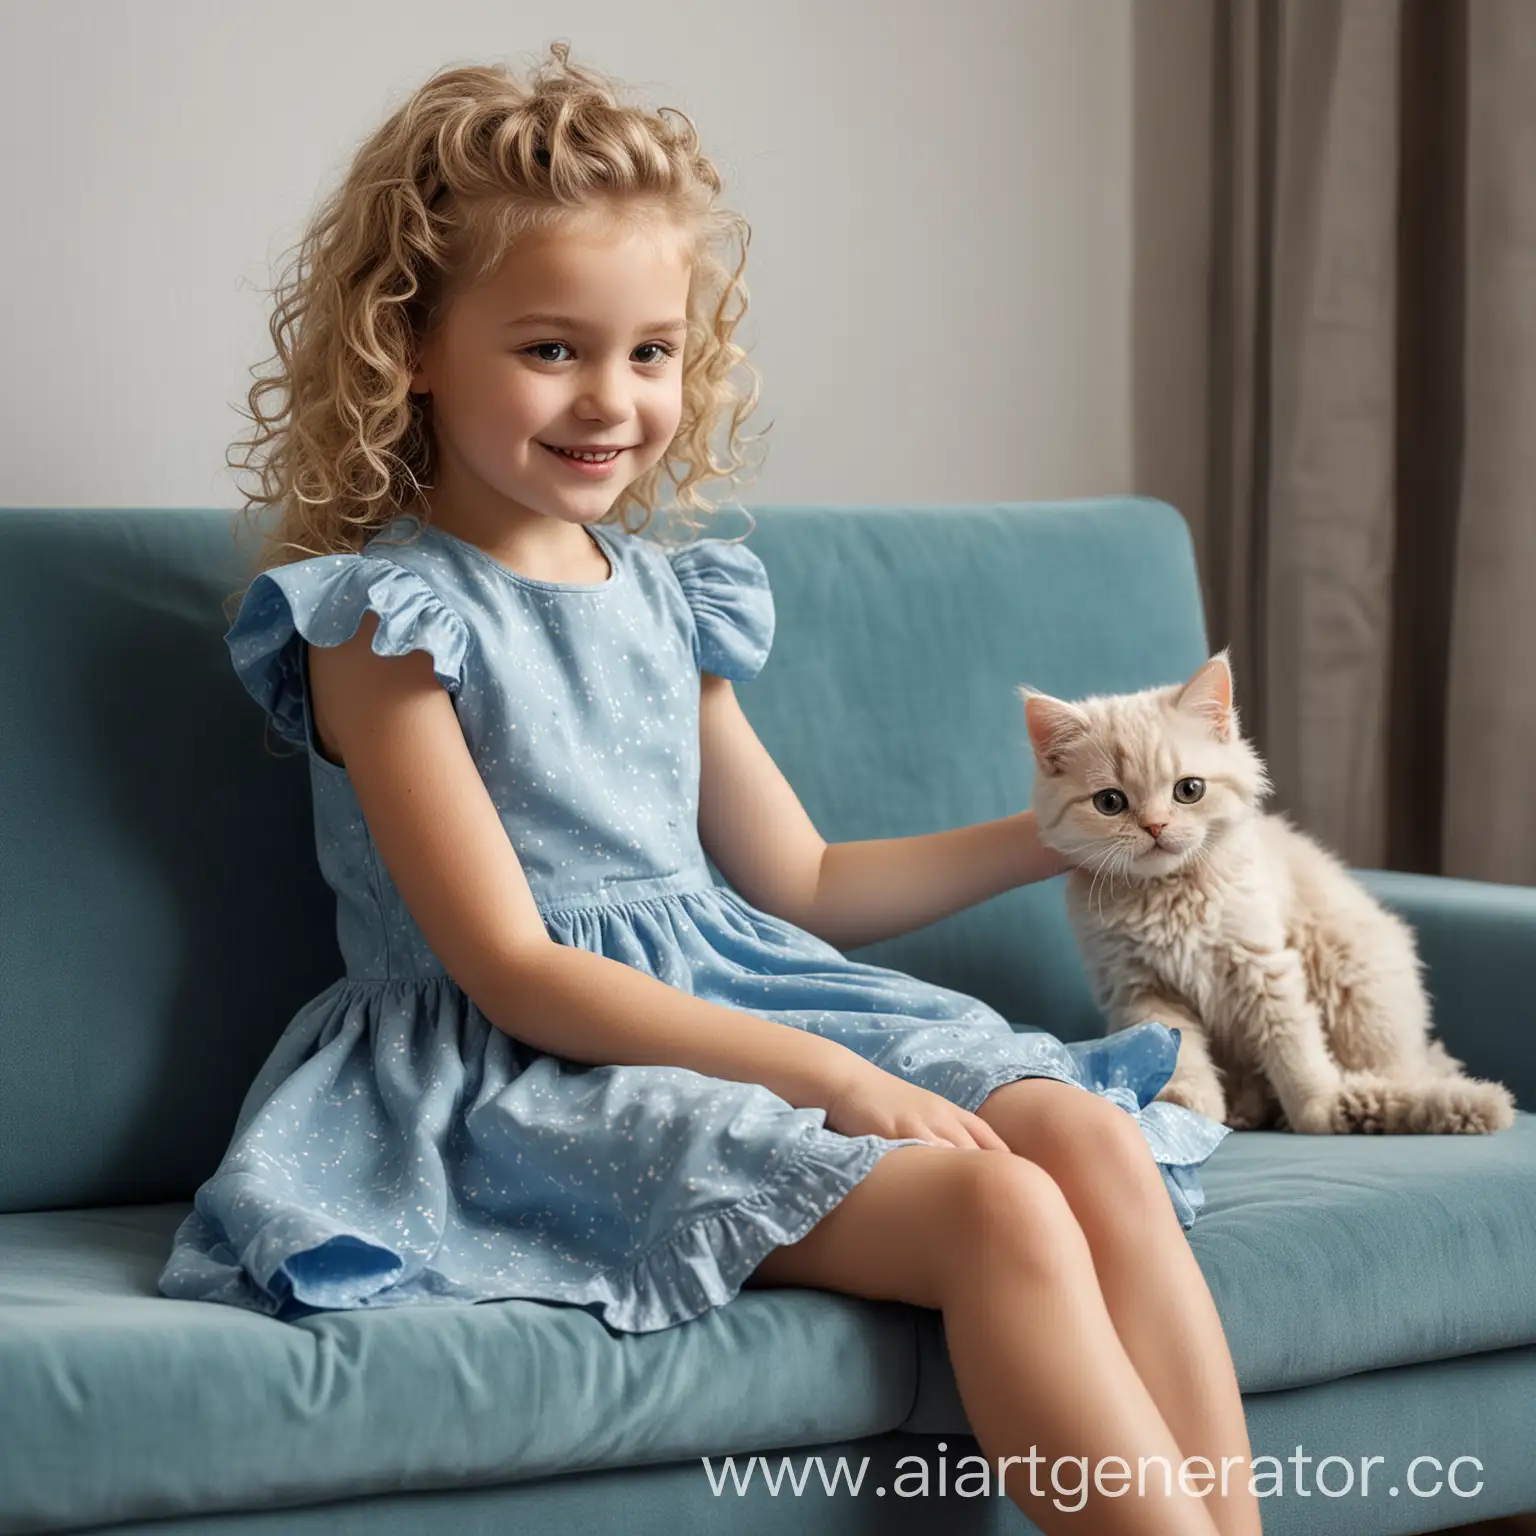 Реальное фото. Девочка 5 лет сидит на диване в детской комнате и играет с роботизированным котом. На ней голубое платье и светлые кудрявые волосы, она улыбается.